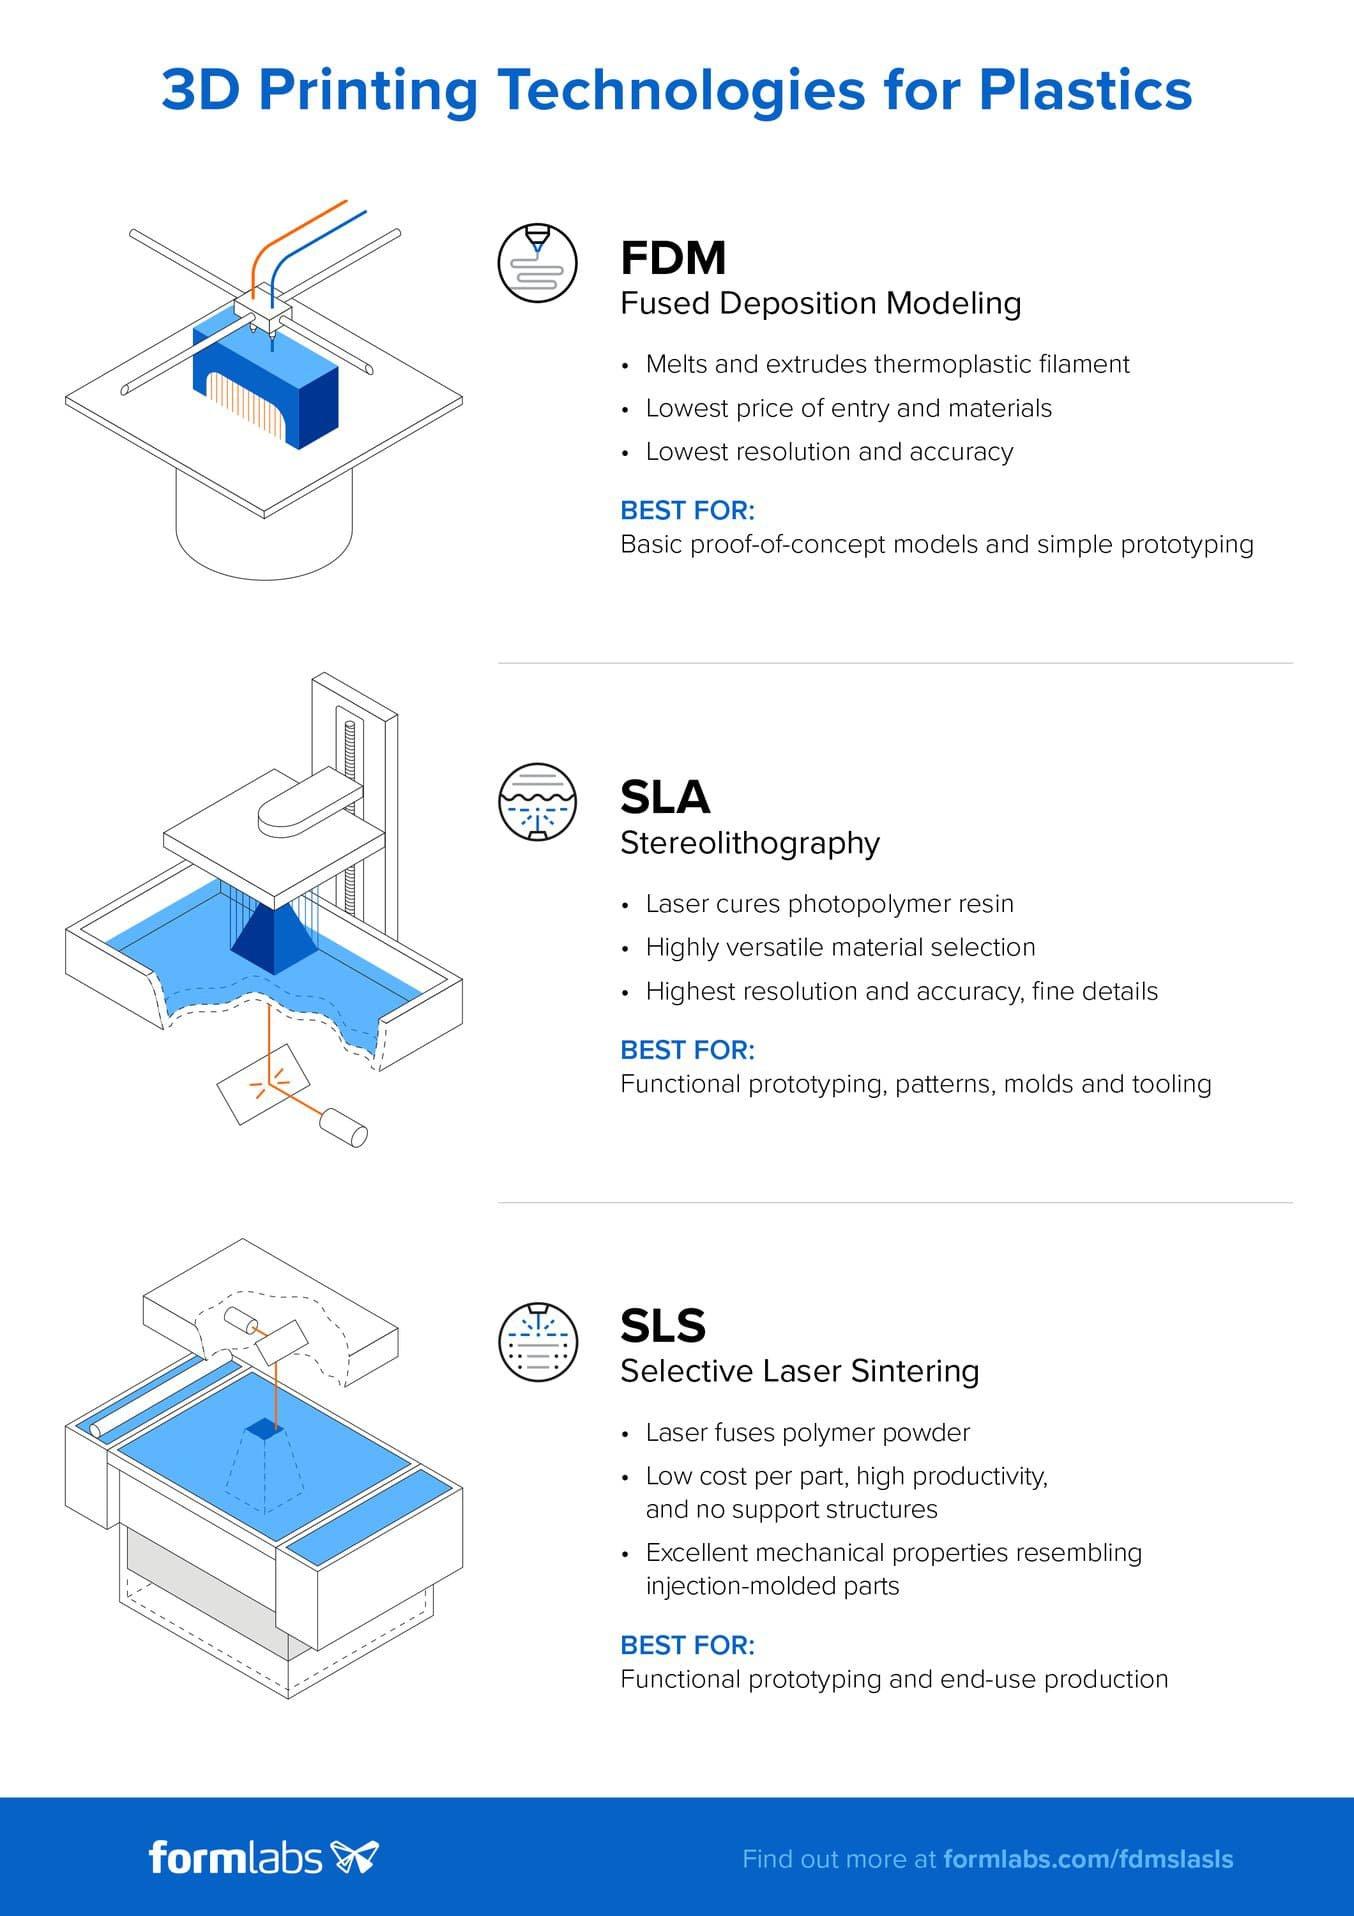 Laden Sie die hochauflösende Version dieser Infografik hier herunter. Möchten Sie mehr über die Technologien FDM, SLA und SLS erfahren? Werfen Sie einen Blick auf unseren detaillierten Leitfaden.